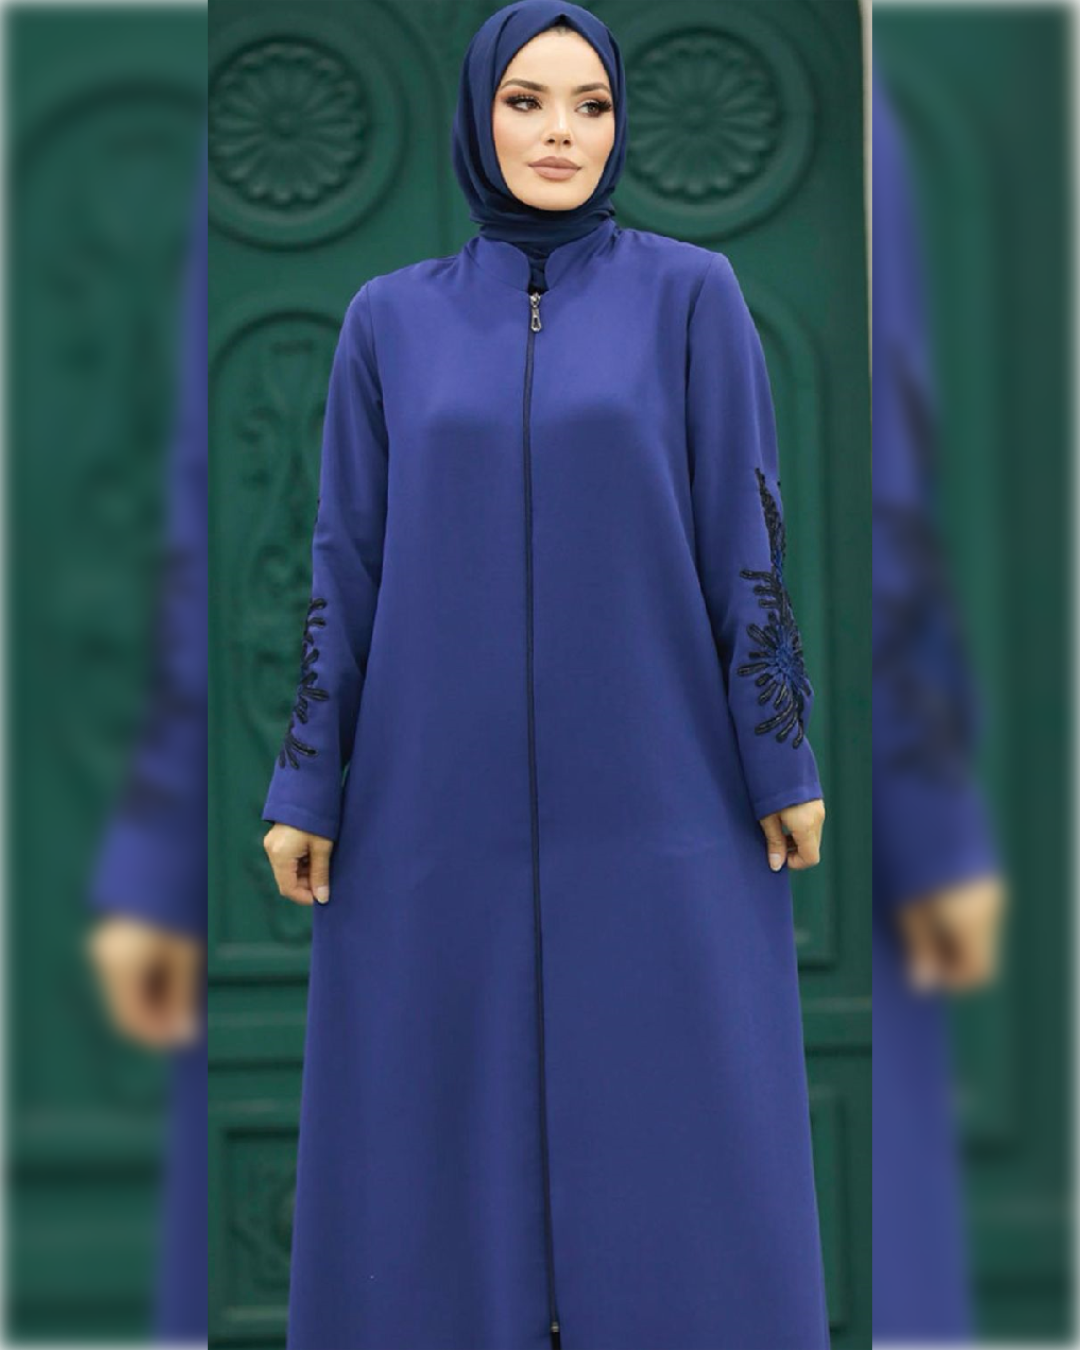 Fatimah Chic Abaya Dress for Summer in Royal Blue Shade   عباءة فاطمة الصيفية  باللون الأزرق الملوكي الجميل و تفاصيل أنيقة